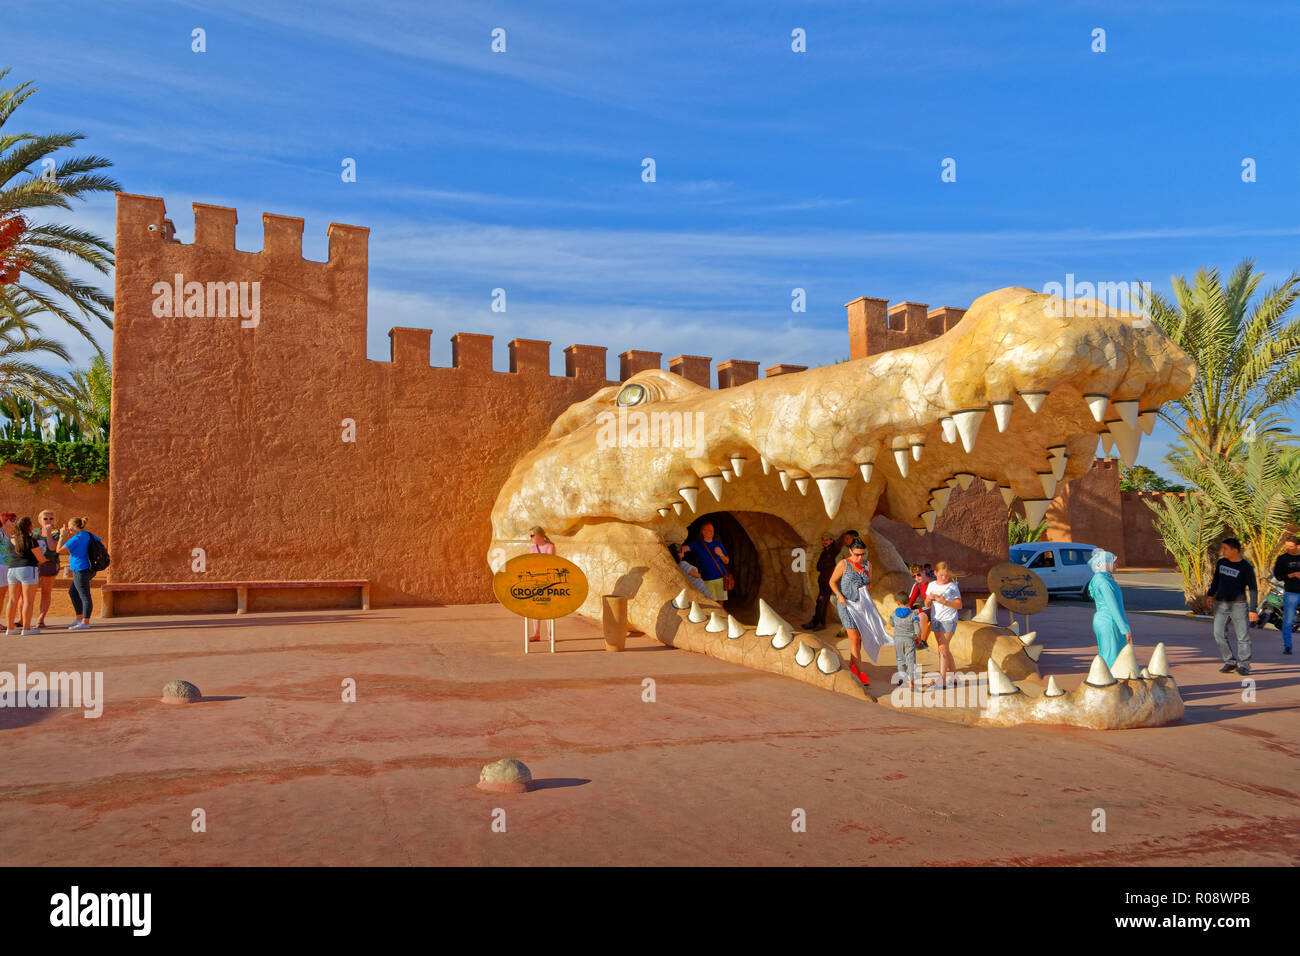 Testa di coccodrillo caratteristica come l'entrata di croco Parc, coccodrillo theme park, Agadir, Marocco Meridionale, Africa occidentale. Foto Stock